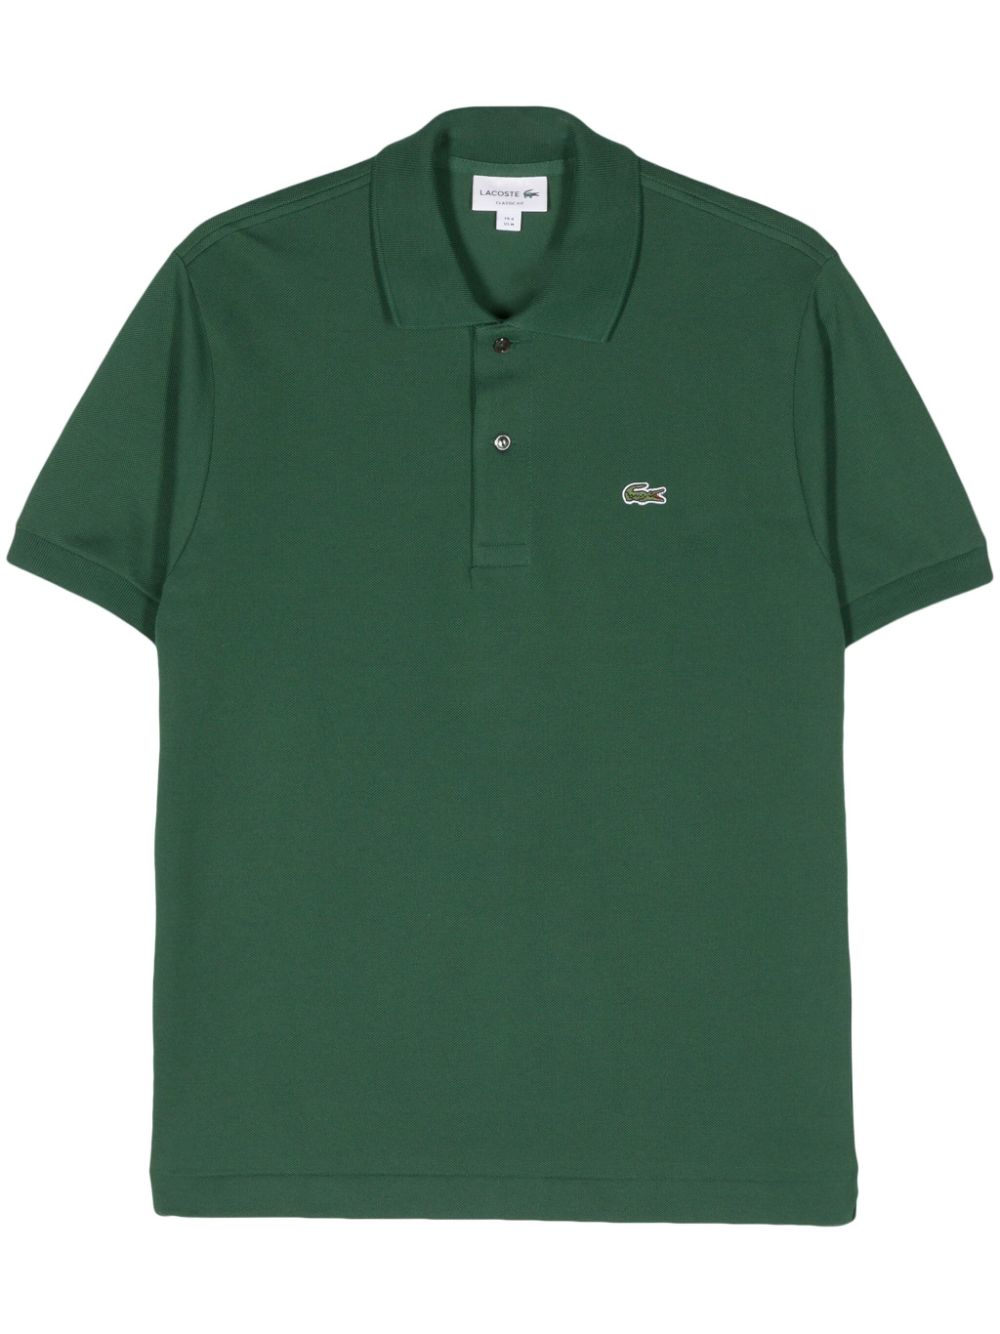 Lacoste Poloshirt mit Logo-Patch - Grün von Lacoste